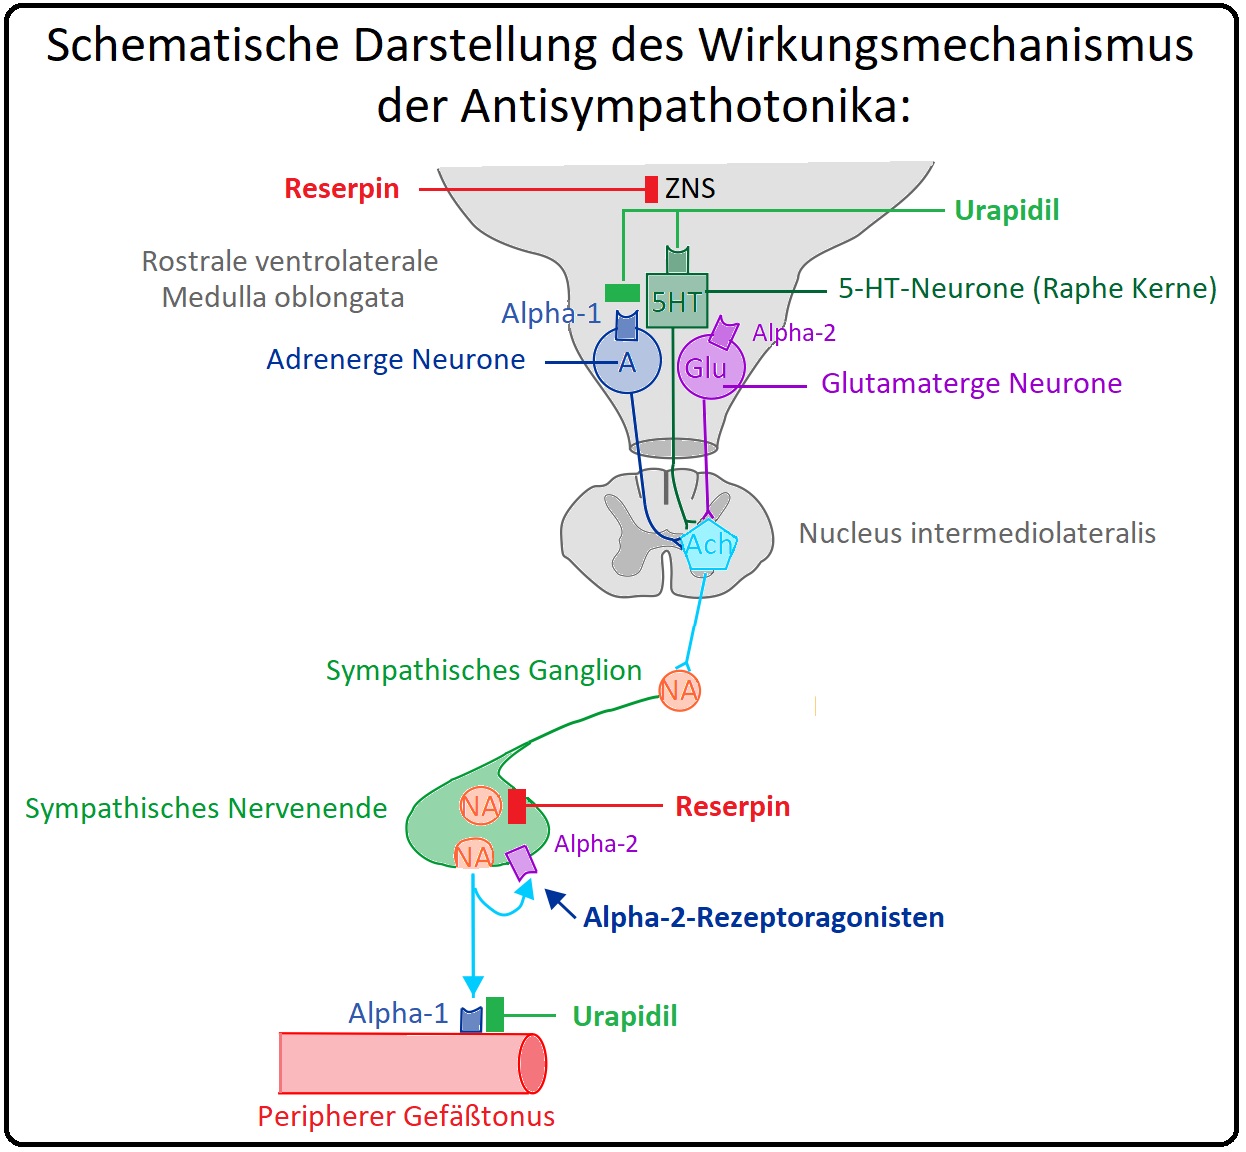 107 Schematische Darstellung des WIrkungsmechanismus der Antisympathotonika